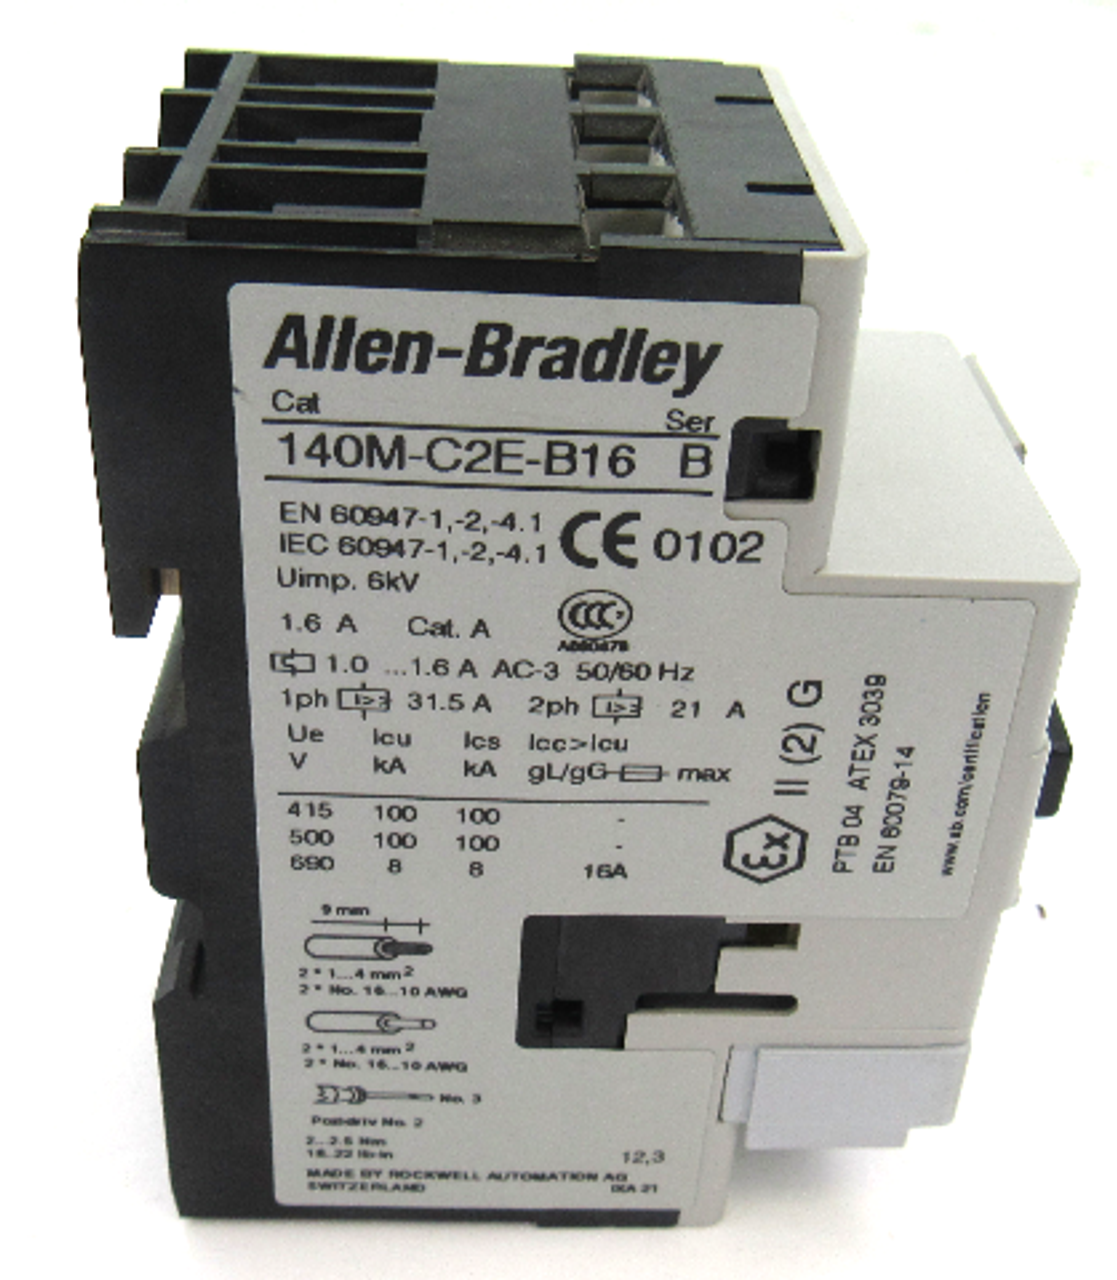 Allen Bradley 140M-C2E-B16 Ser. B Starter Magnetic Trip, 1.6 Amp, 240V AC